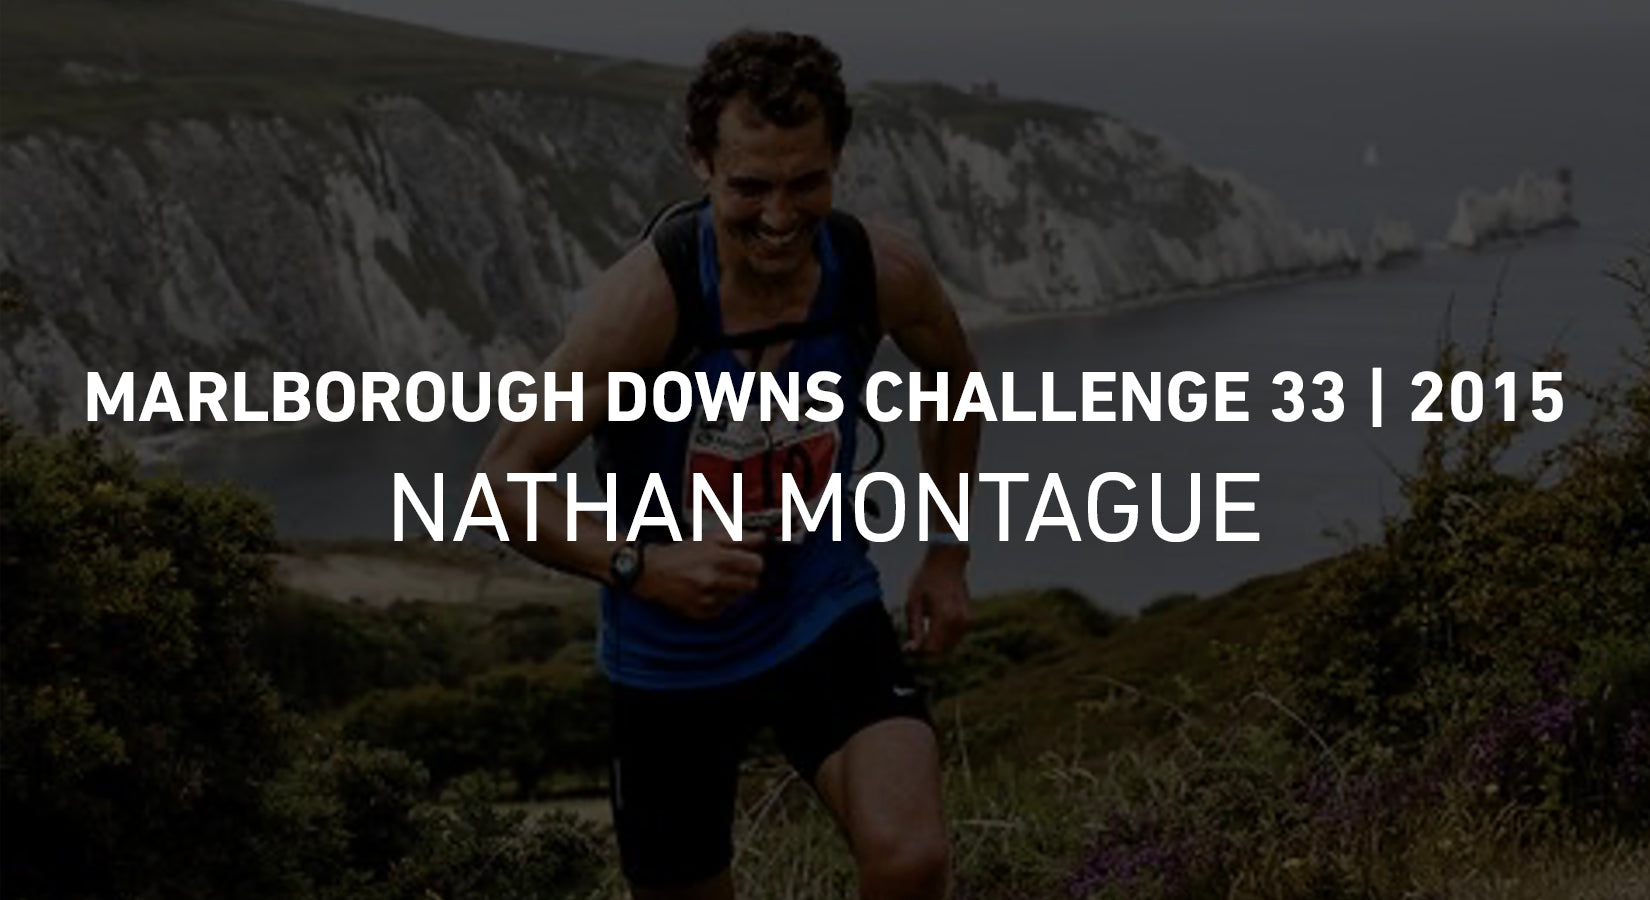 Marlborough Downs Challenge 33 - Nathan Montague - 2015